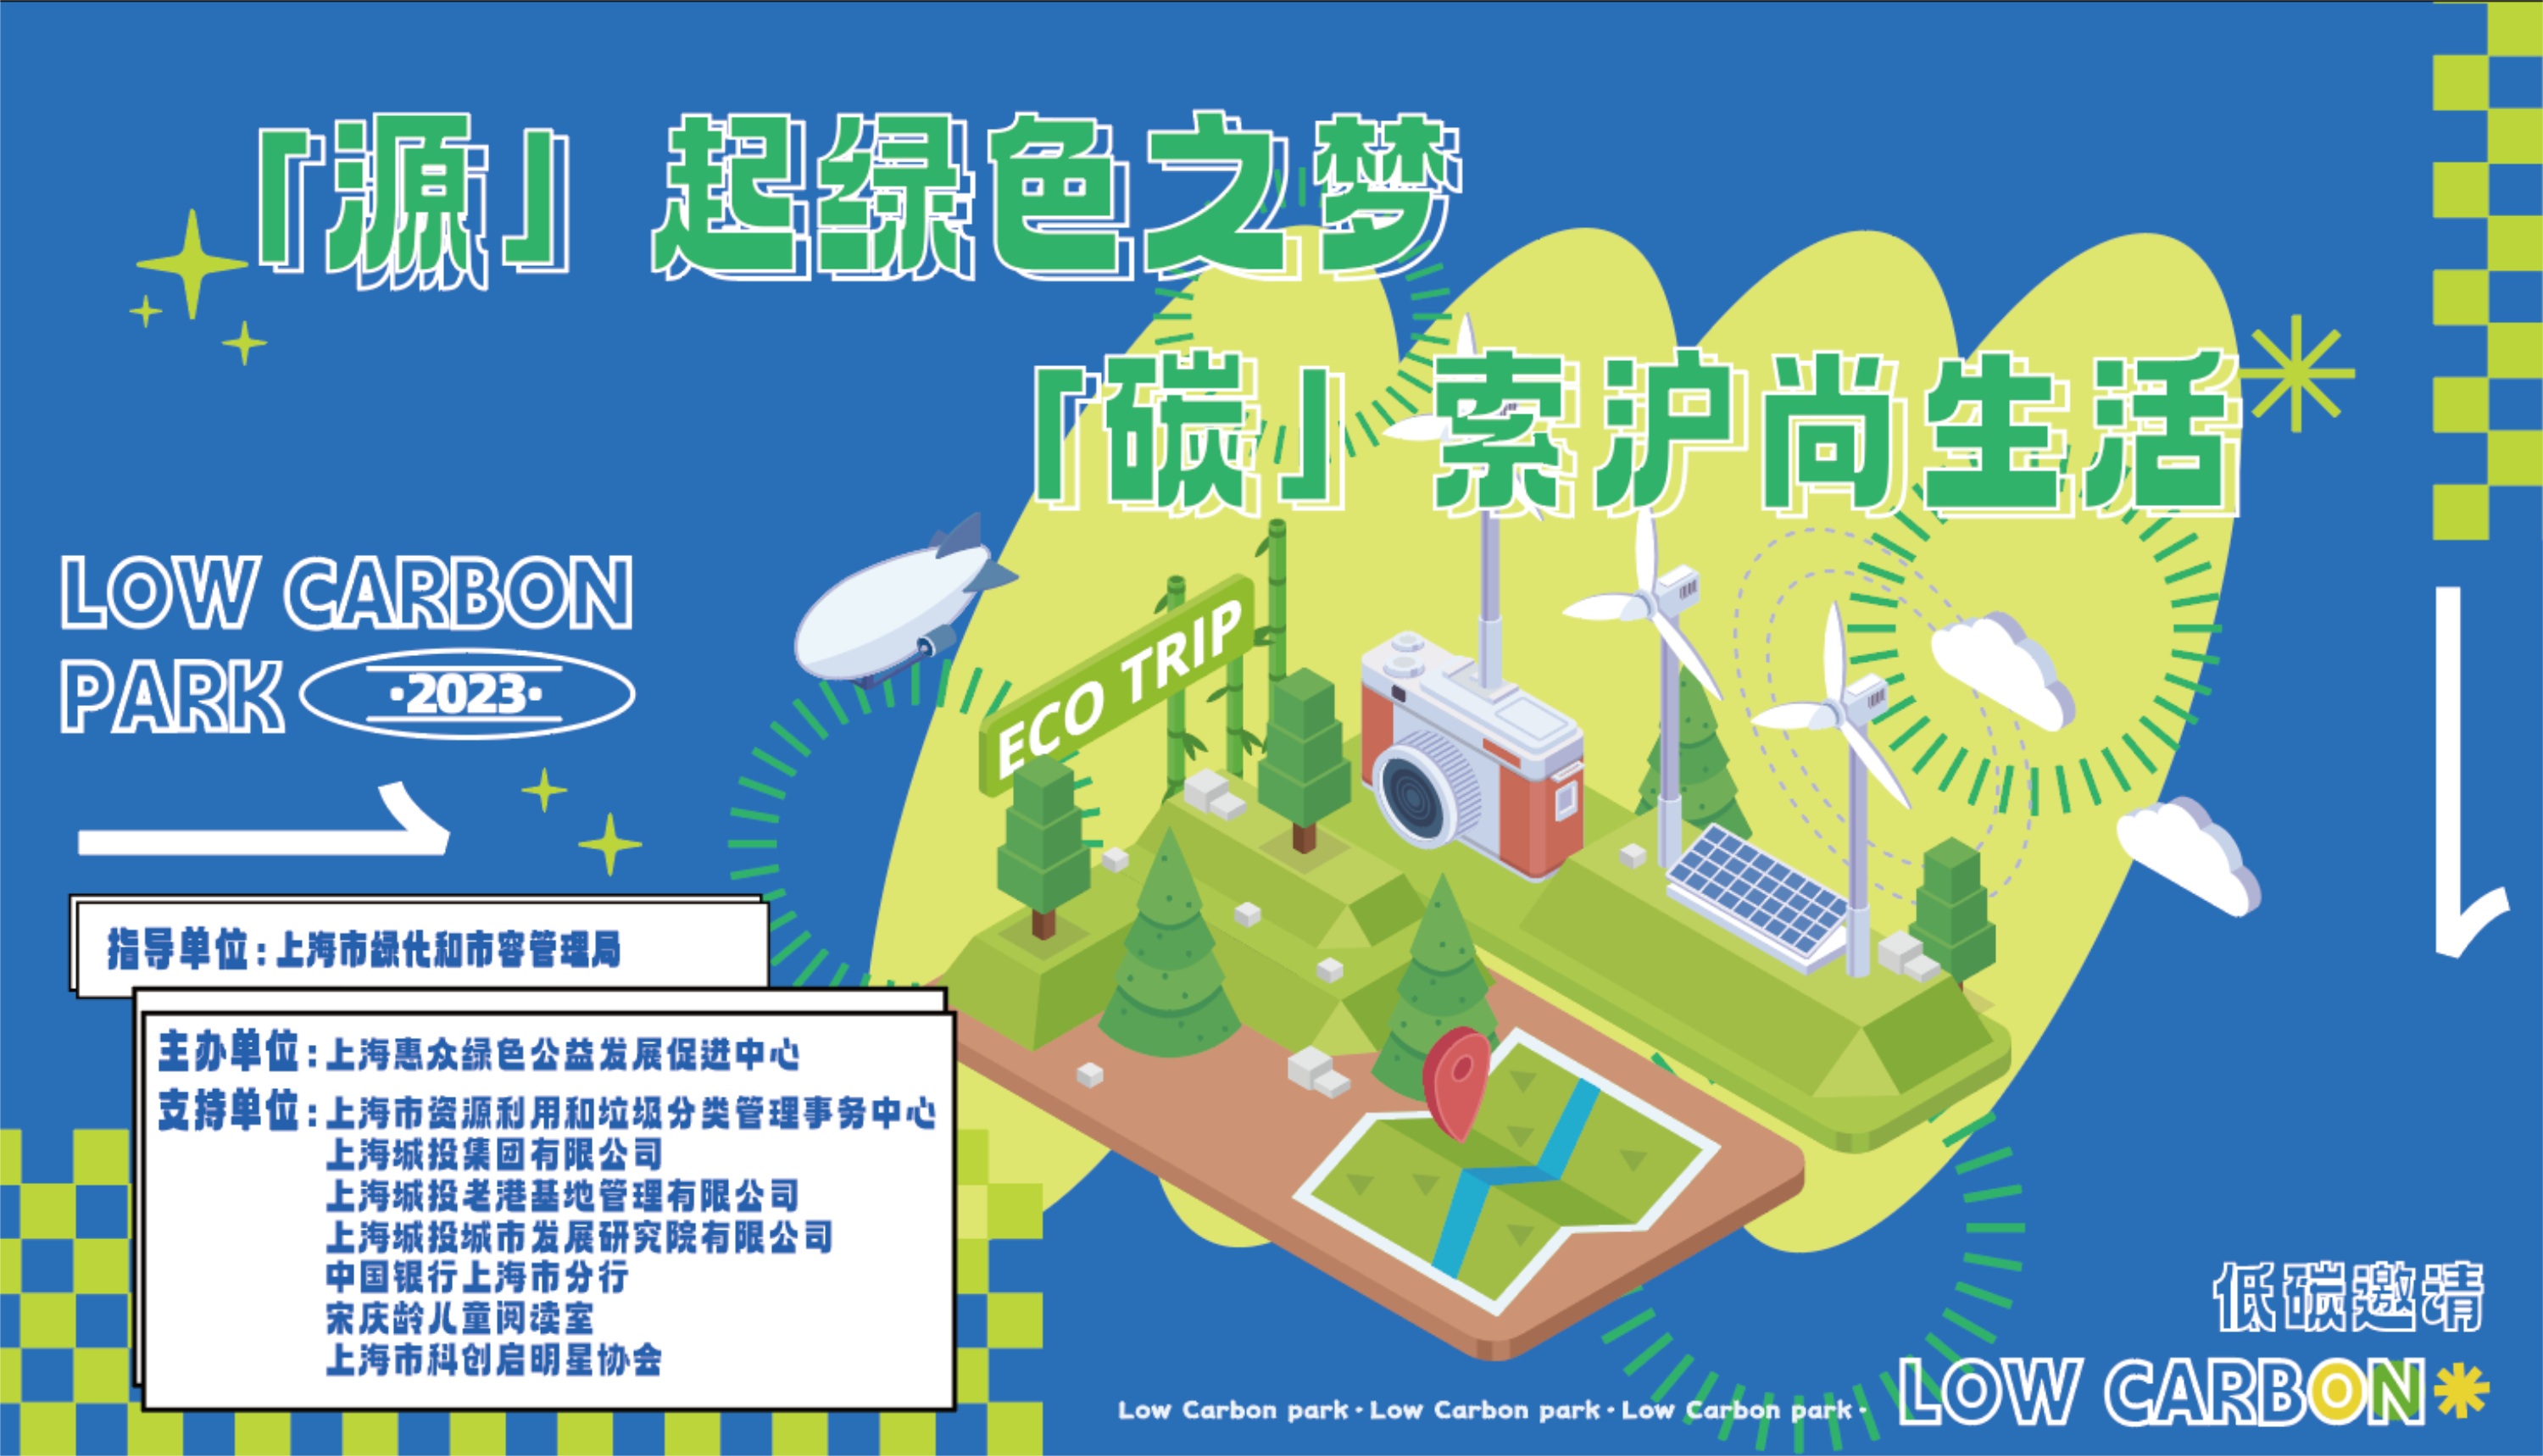 上海惠众公益中心正式推出“绿色账户沪尚回收”微信小程序，全新探索赋能垃圾分类升级版